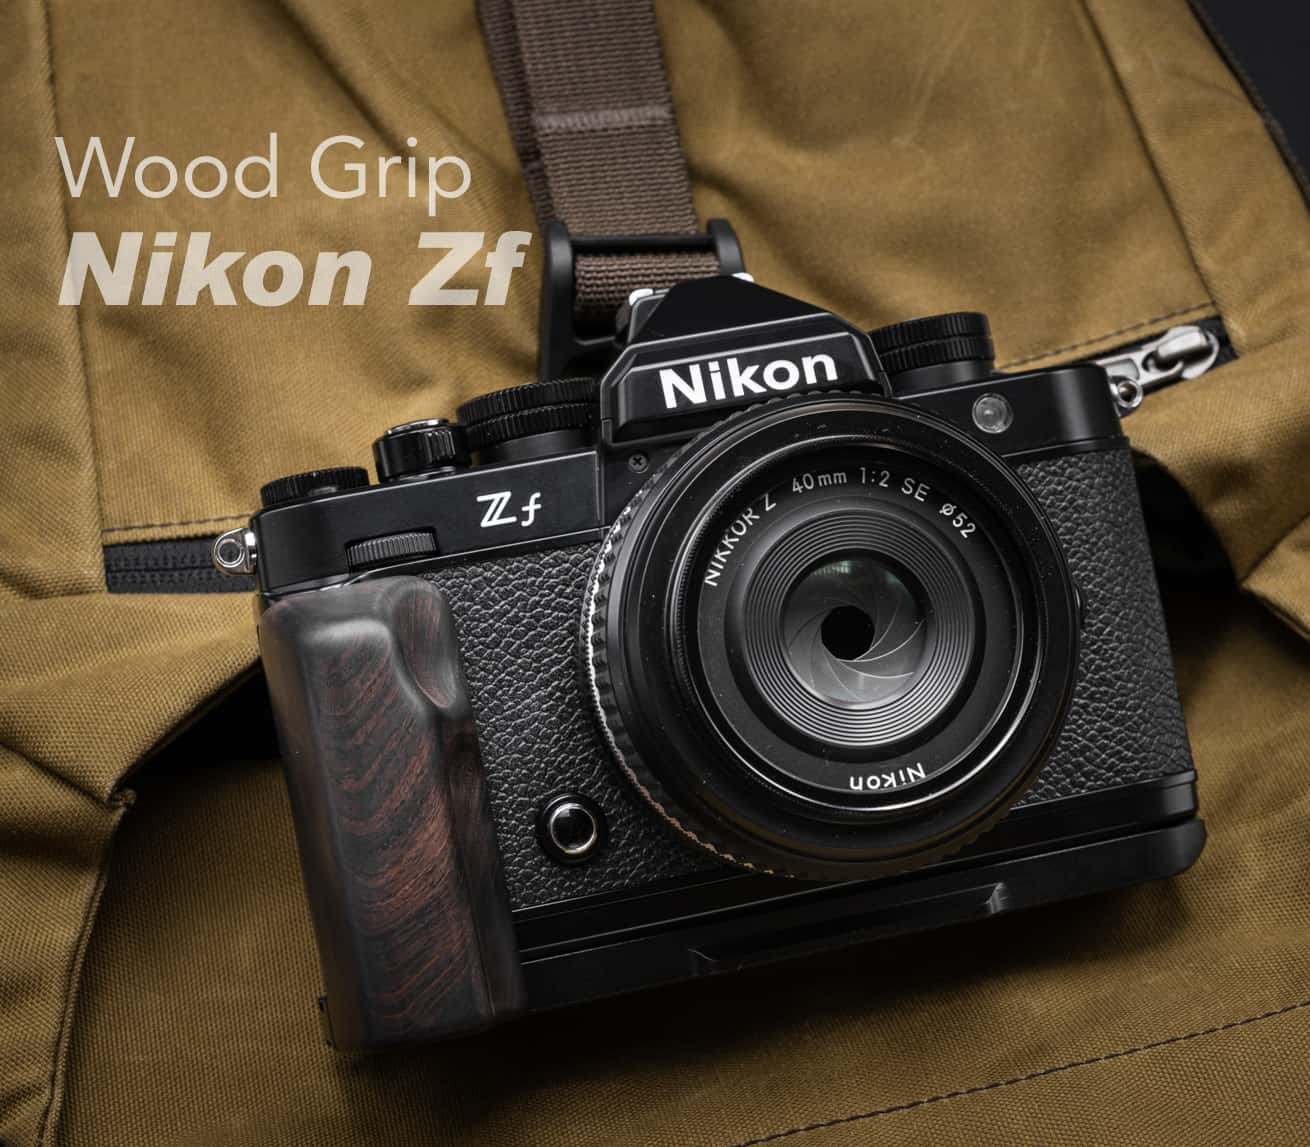 กริปไม้ Nikon Zf Wood Grip Ebony จาก MostTap